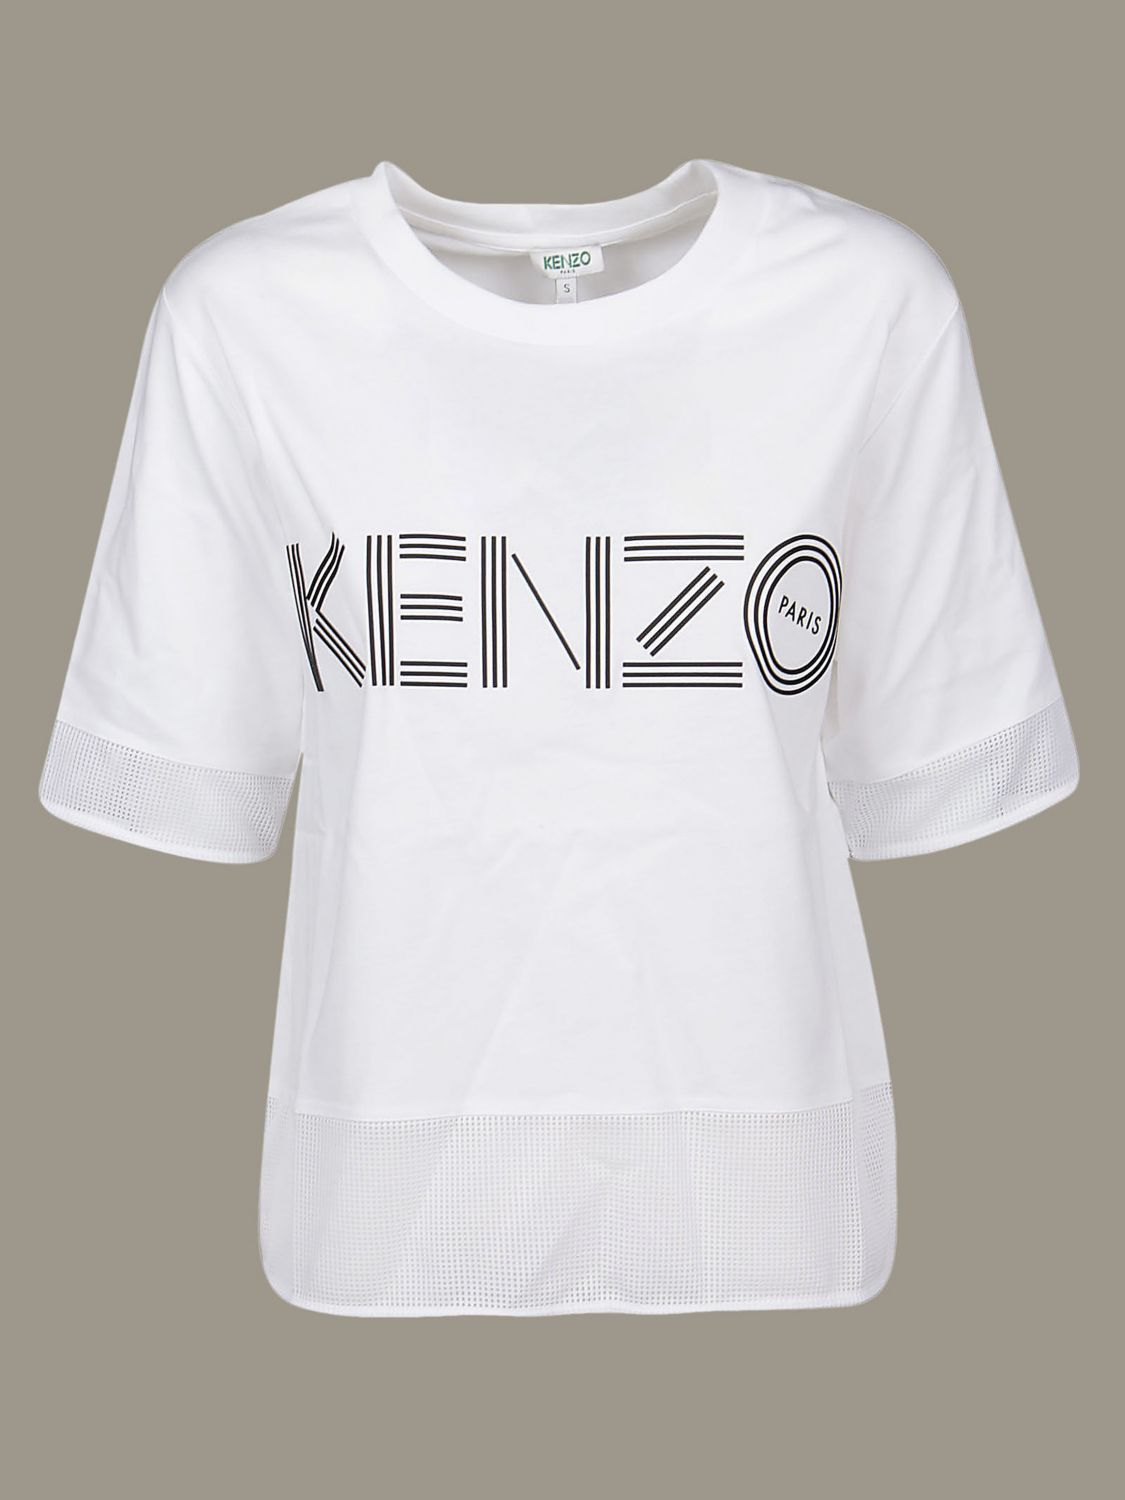 kenzo shirt women's